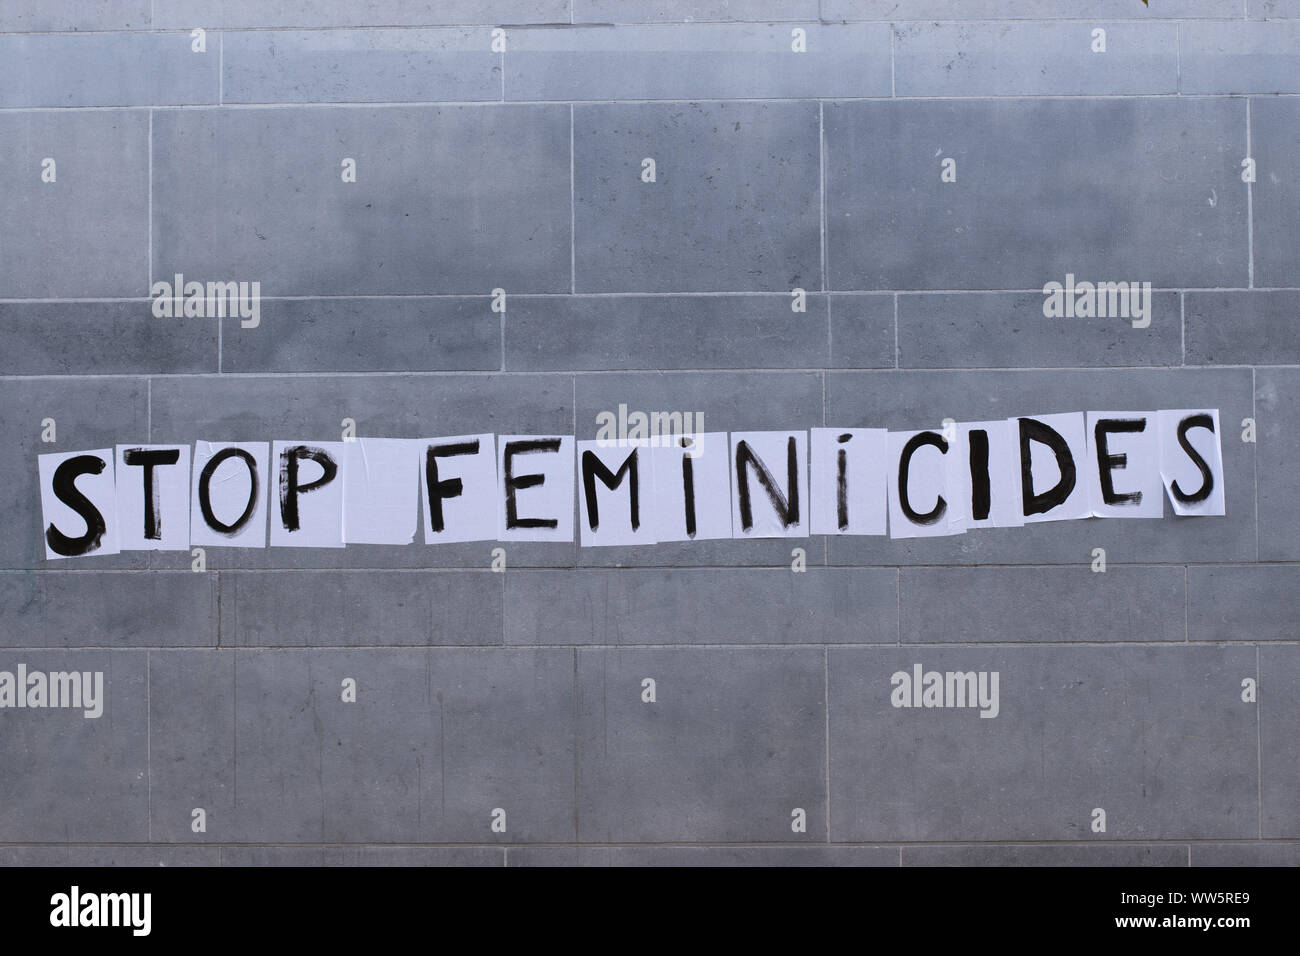 Protest against gender-based violence, 'Stop Femicides', Brussels Belgium September 2019 Stock Photo